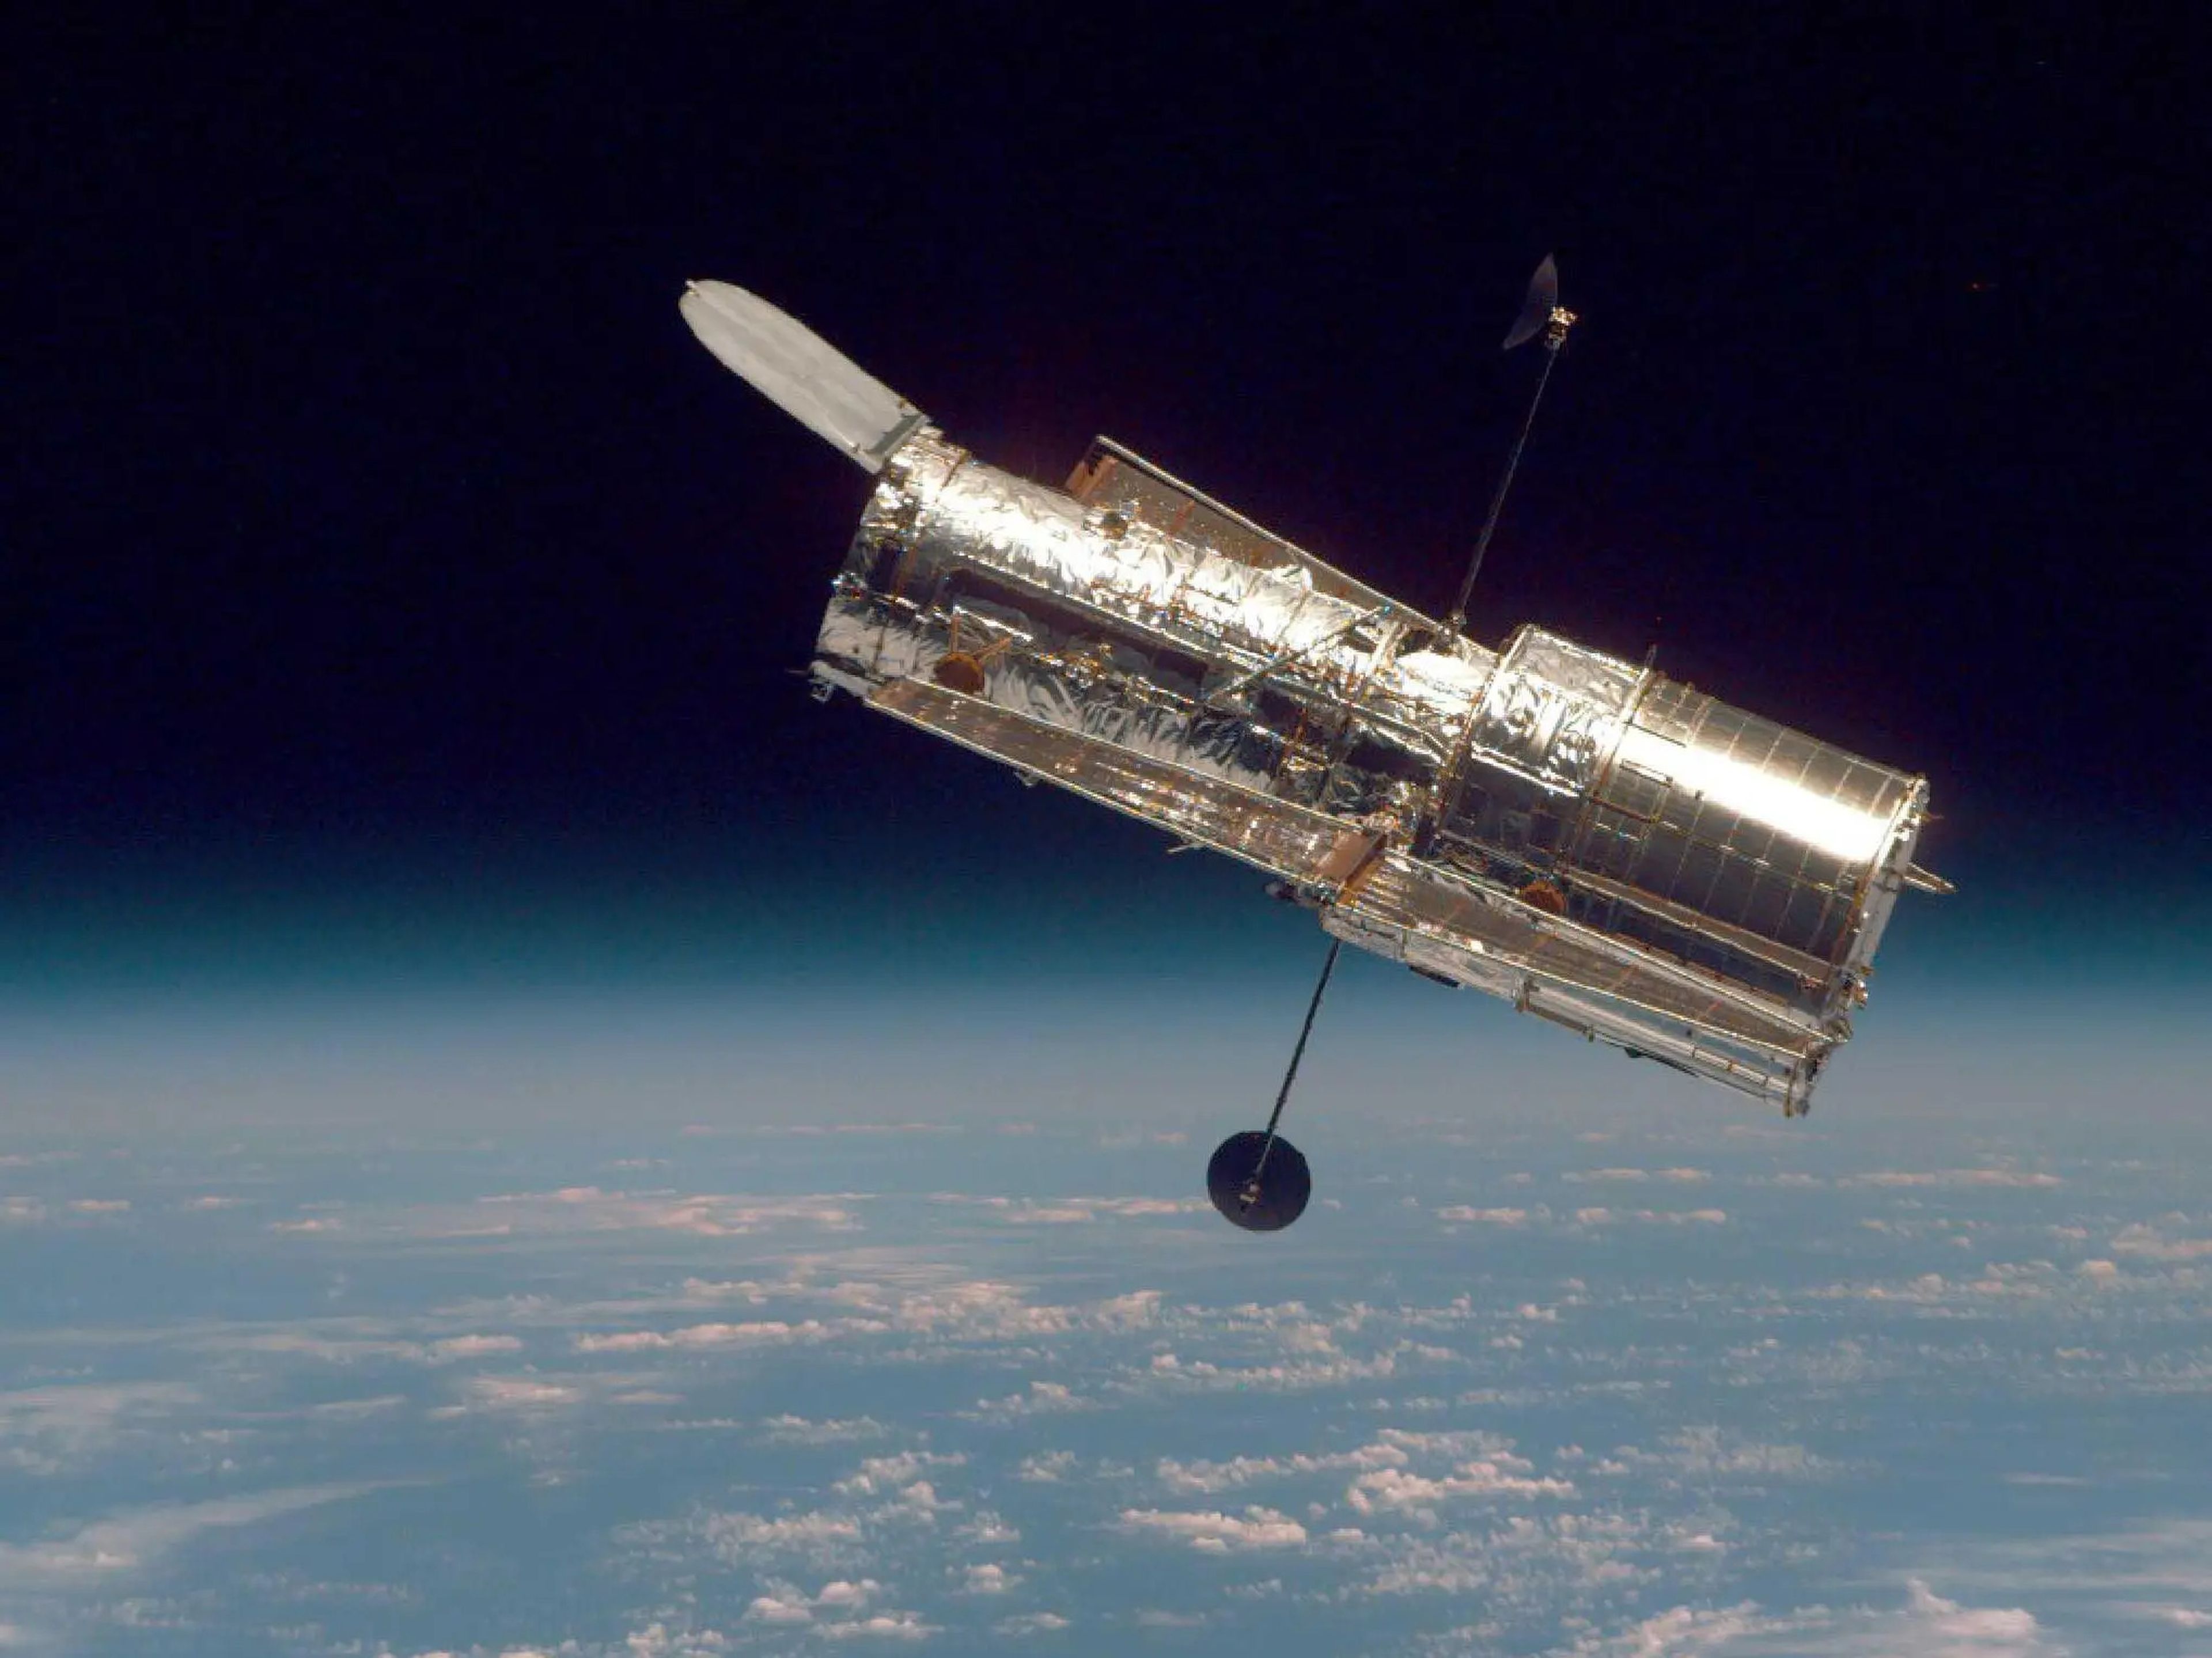 El telescopio espacial Hubble flota en el límite entre la Tierra y el espacio en esta imagen, tomada después de la segunda misión de servicio del Hubble en 1997.